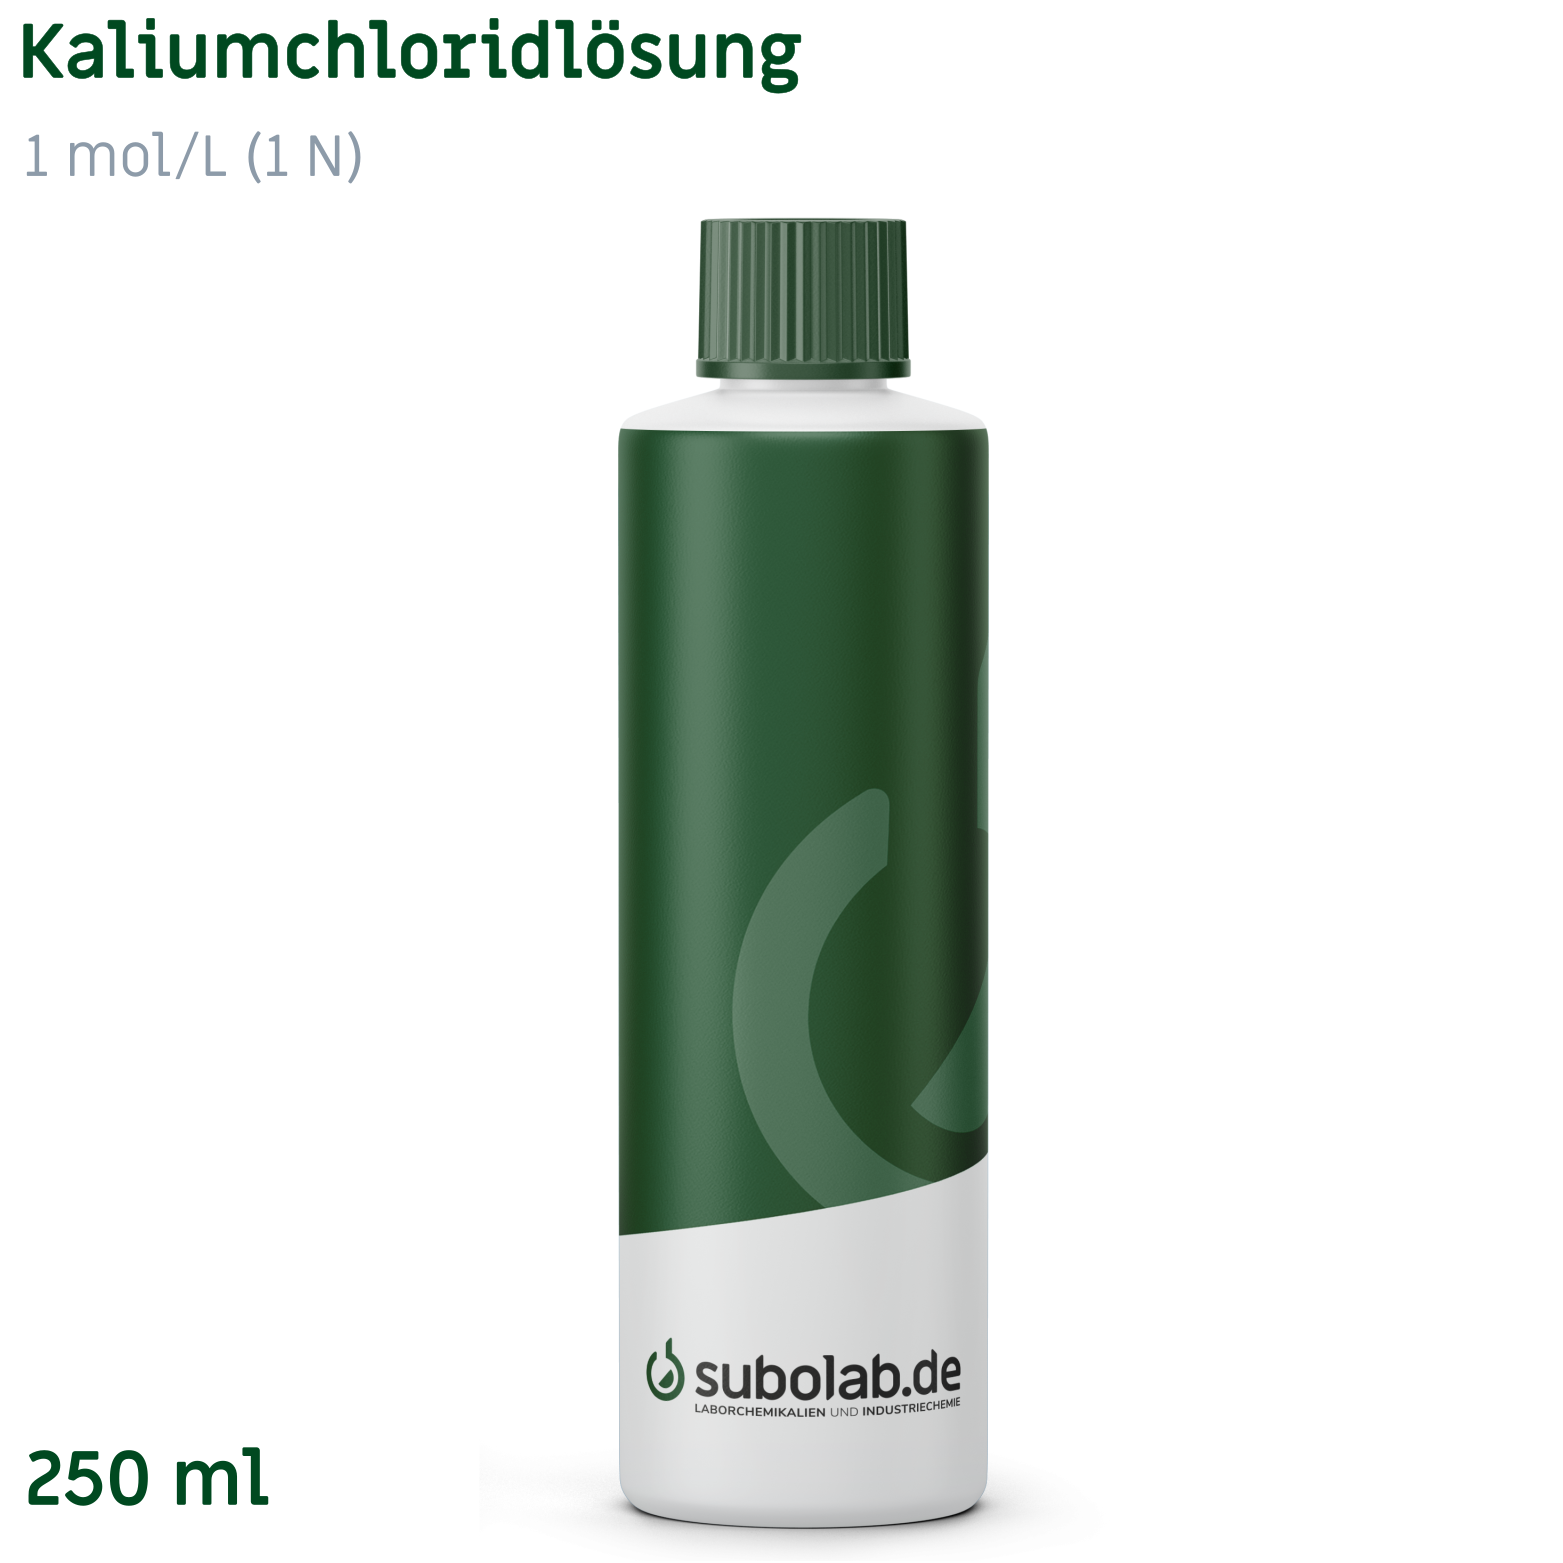 Bild von Kaliumchloridlösung 1 mol/L (1 N) (250 ml)